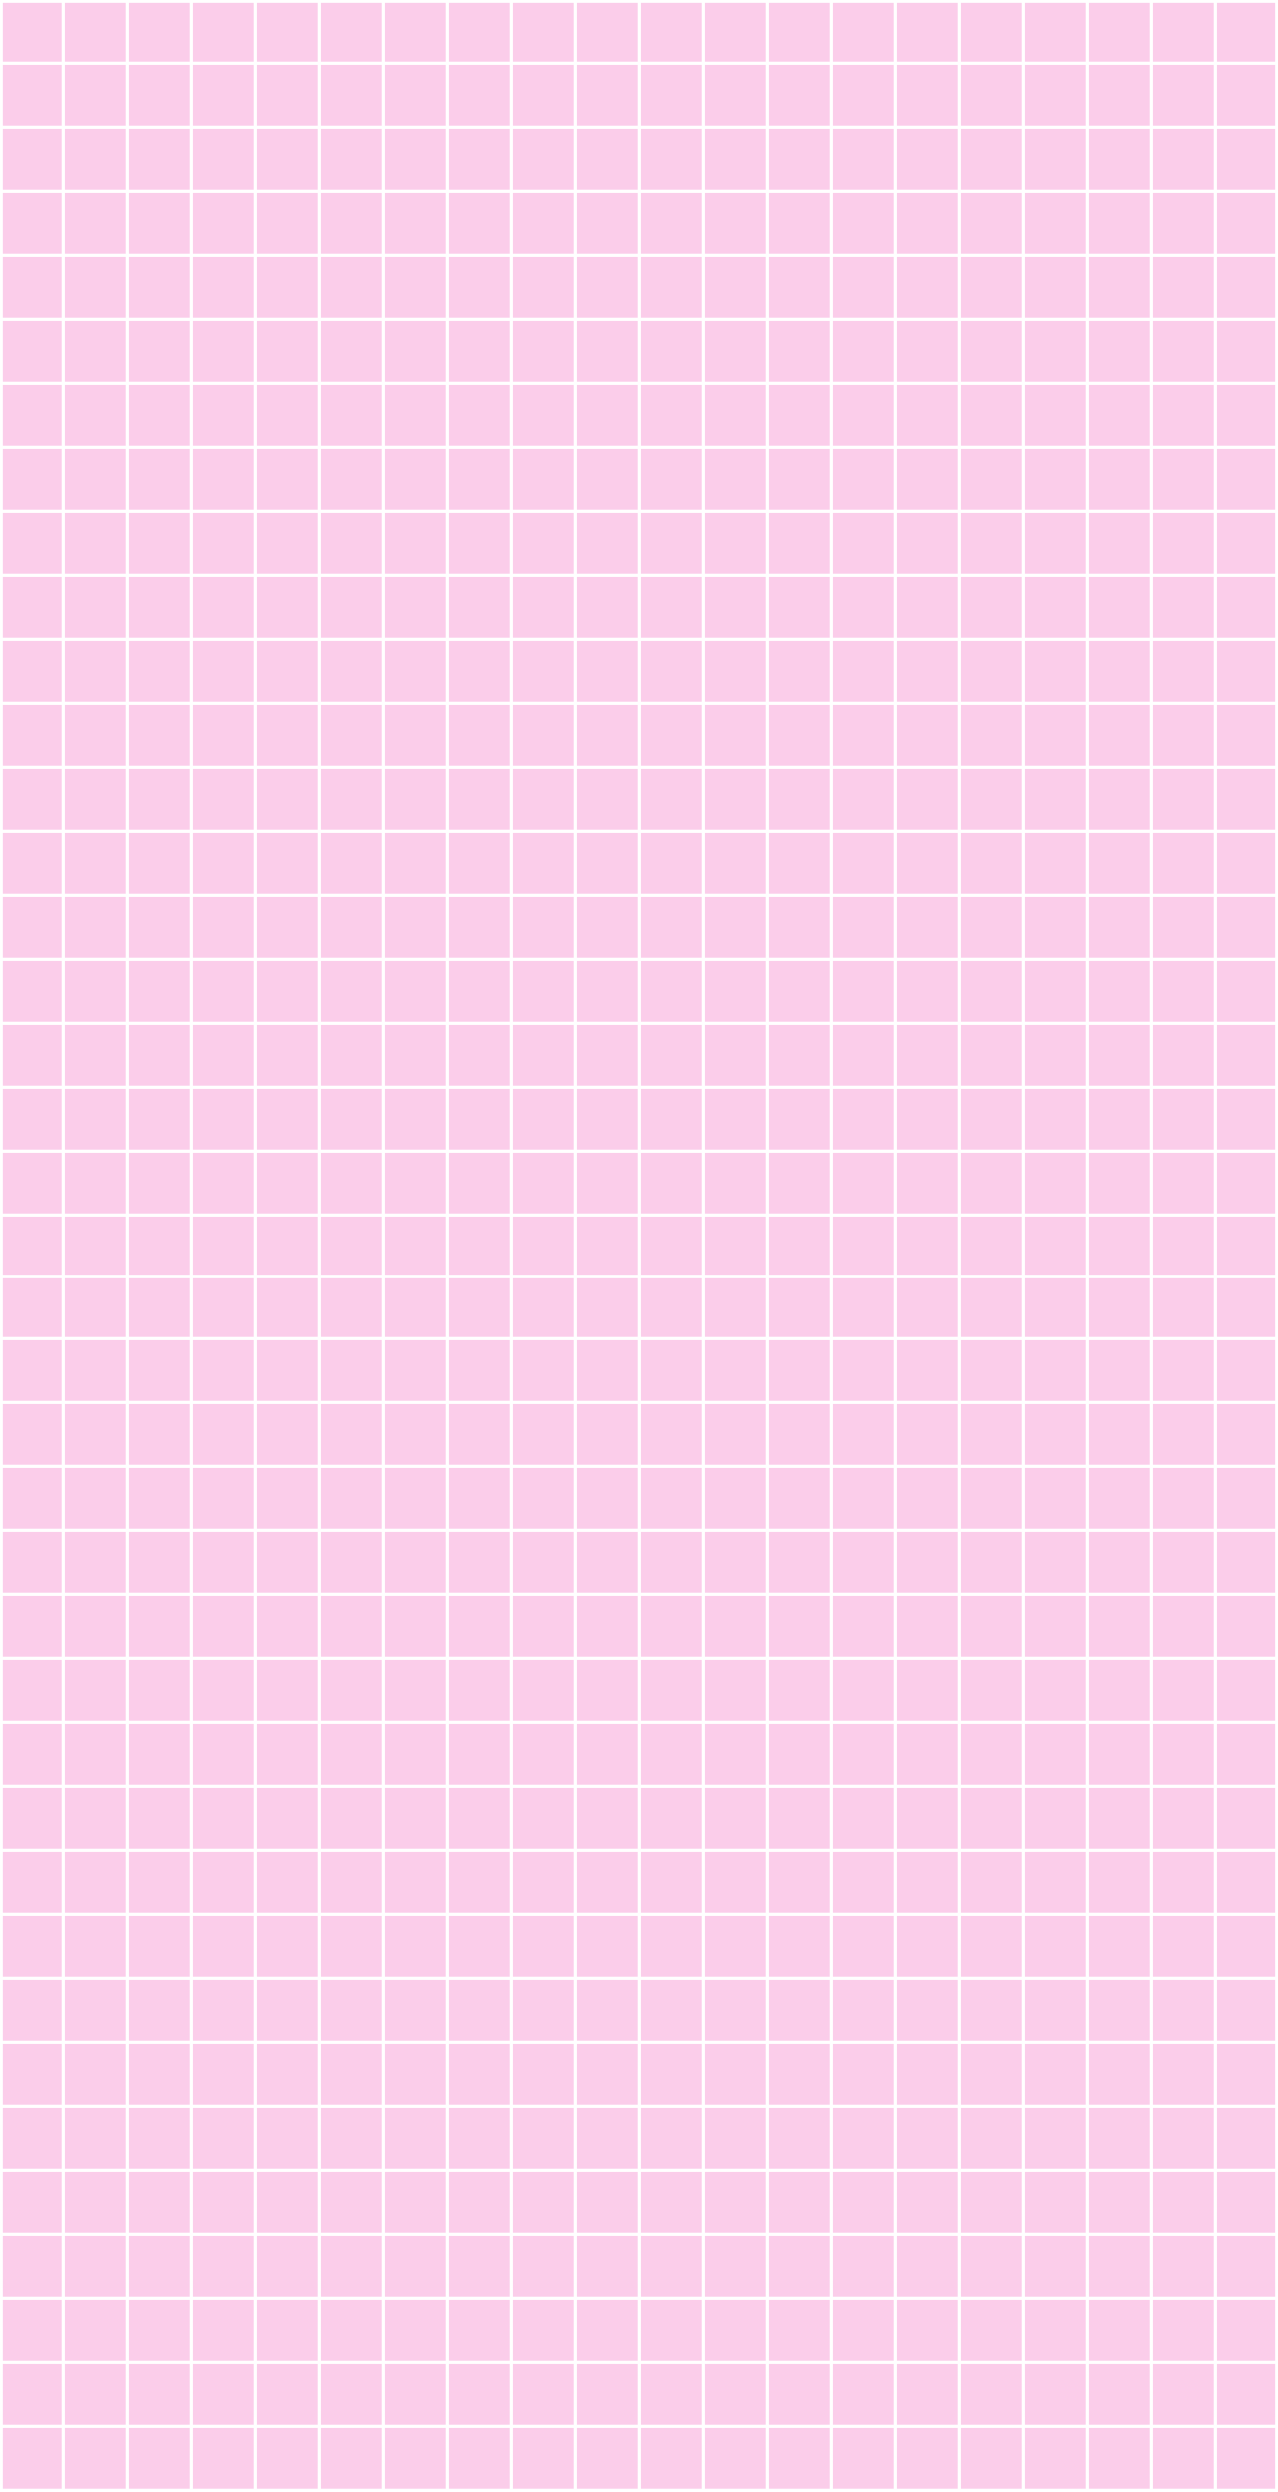 Hình nền hình vuông hồng sẽ làm cho màn hình của bạn trở nên đáng yêu hơn bao giờ hết. Tạo cho mình không gian làm việc tươi vui hơn với những hình ảnh đáng yêu này, bạn sẽ thấy tinh thần làm việc của mình cải thiện rõ rệt.